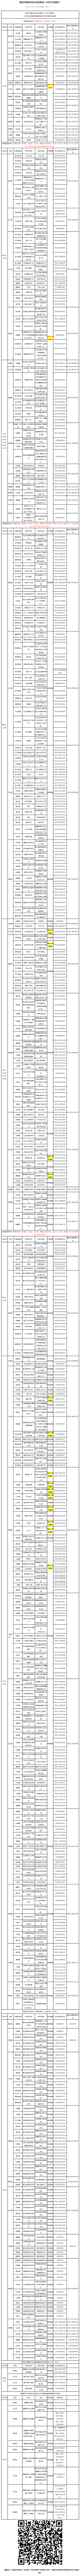 转发收藏！福州核酸采样点位信息表更新（10月24日）